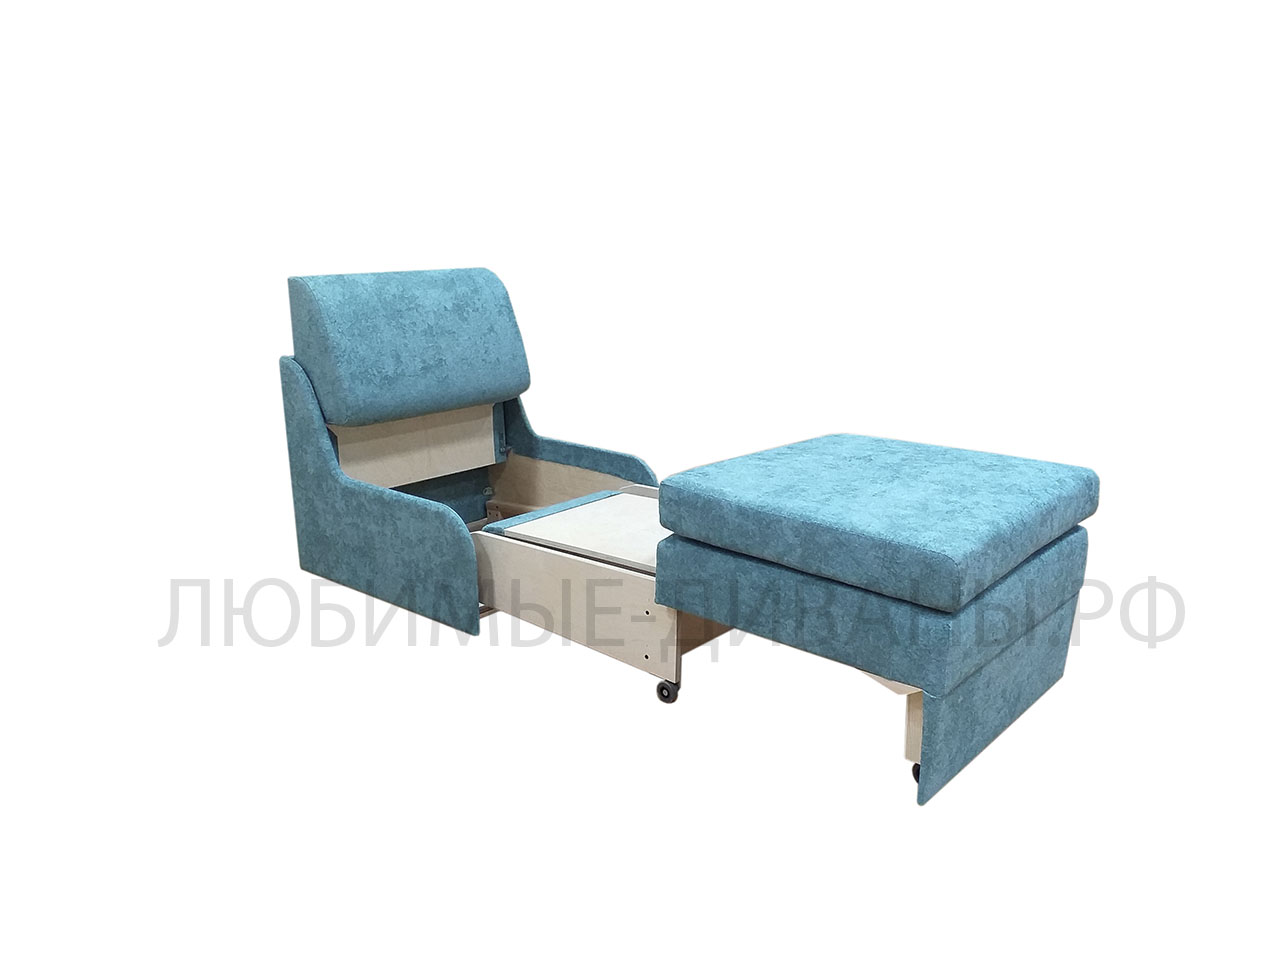 Компактное кресло кровать Танго-4 Д-75 без подлокотников с высоким сидением 48 см и глубиной 80 см. Габаритный размер 80 х 80 см. Спальное место 75 х 200 см.